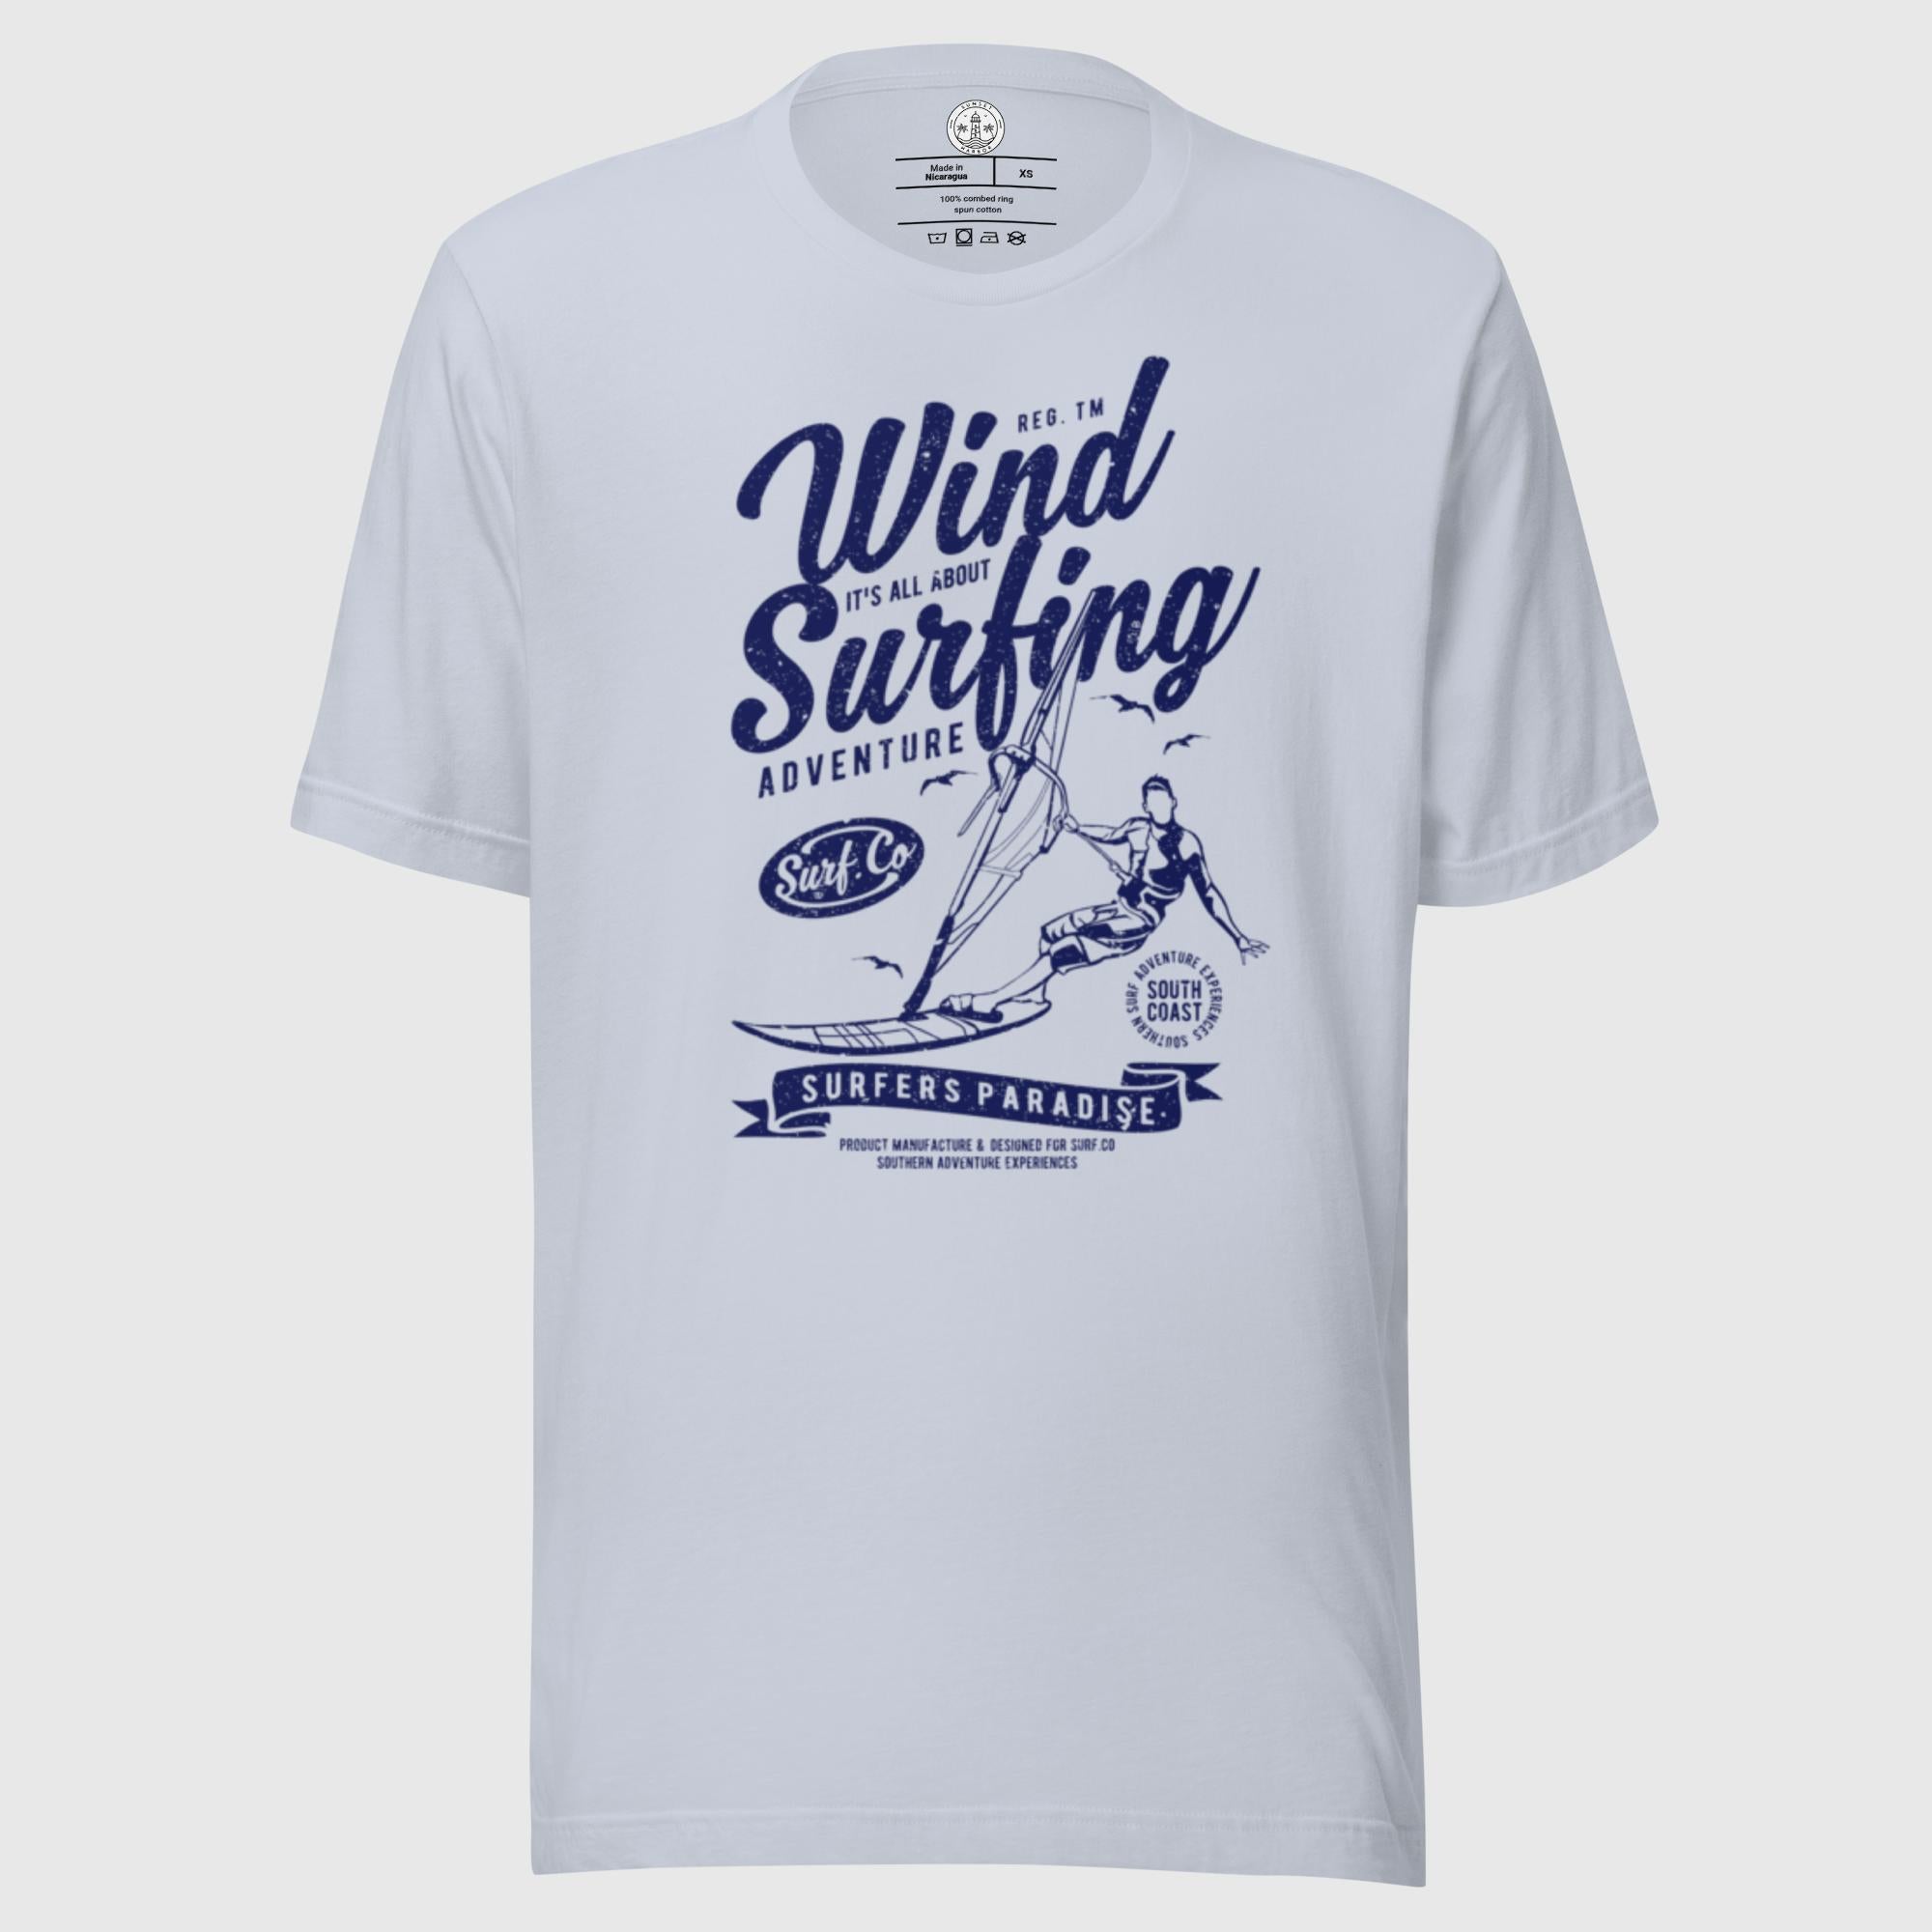 Camiseta unisex - Windsurf